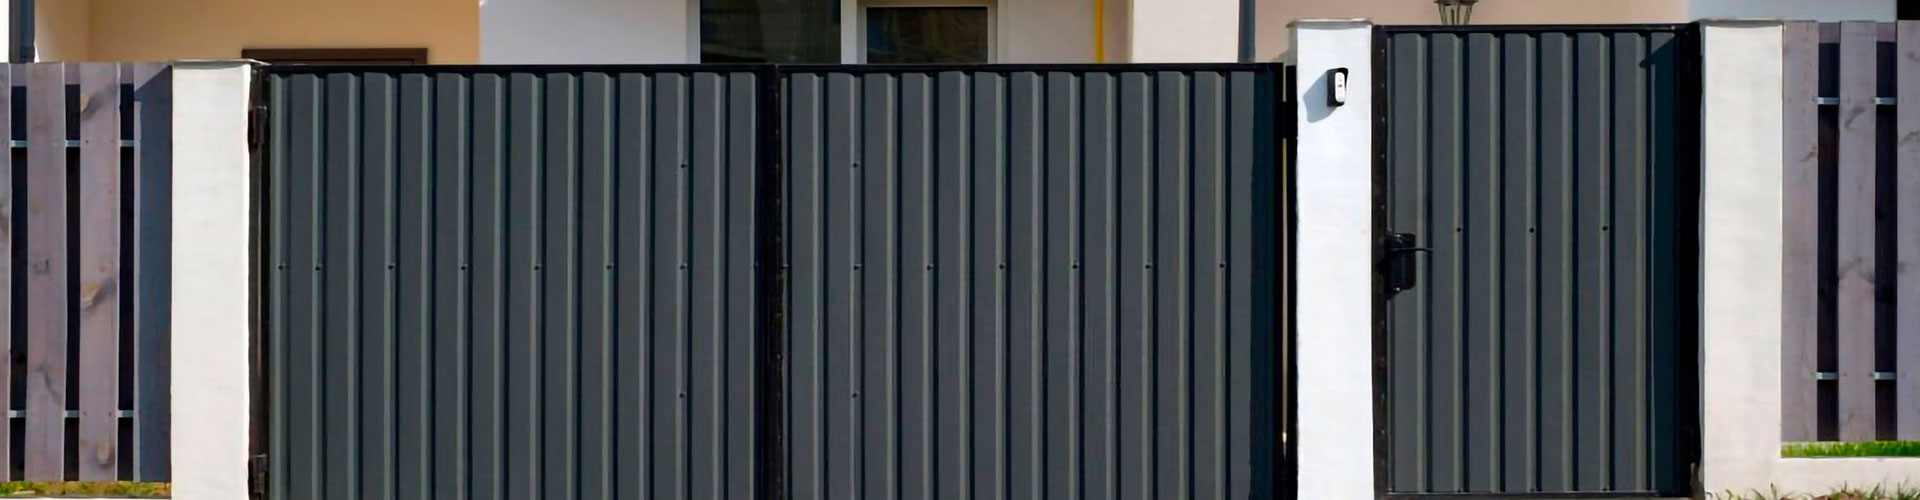 Puertas de hierro para exteriores que modernizan tu entrada - Securfix